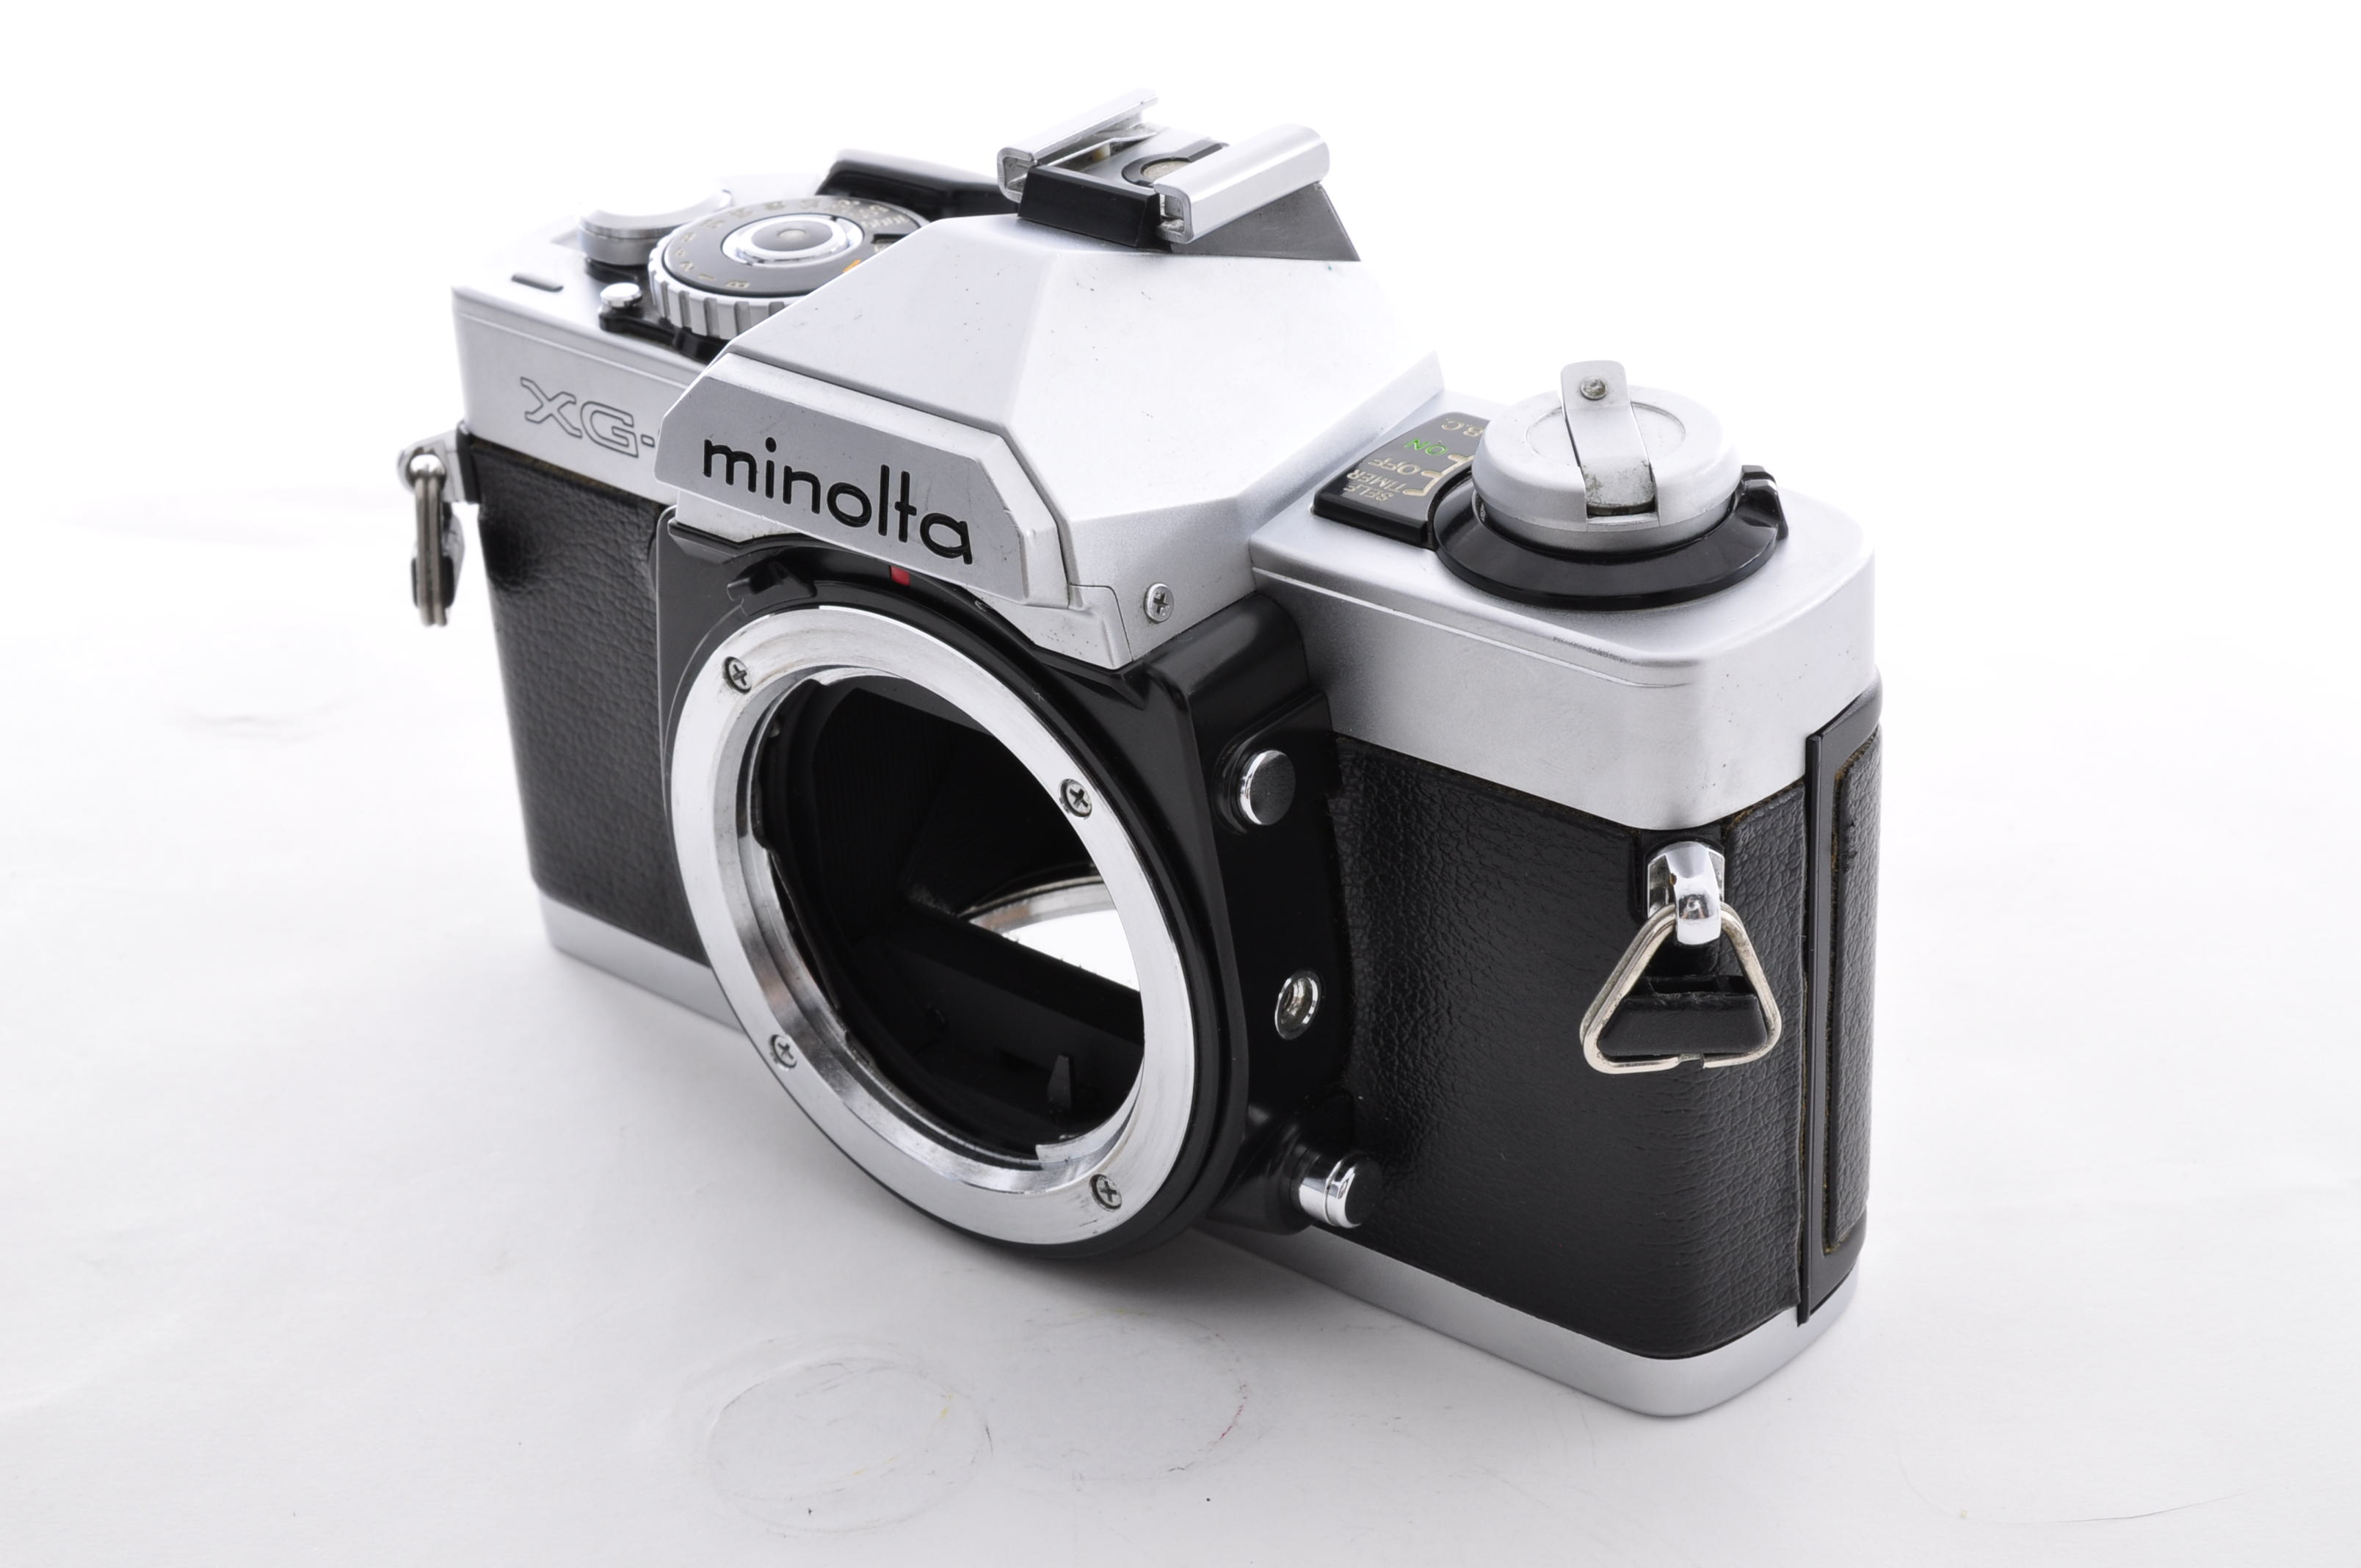 Minolta XG-S (XG-9) 35mm SLR Film Camera + MD 50mm F1.7 Lens [Near Mint] Japan img02